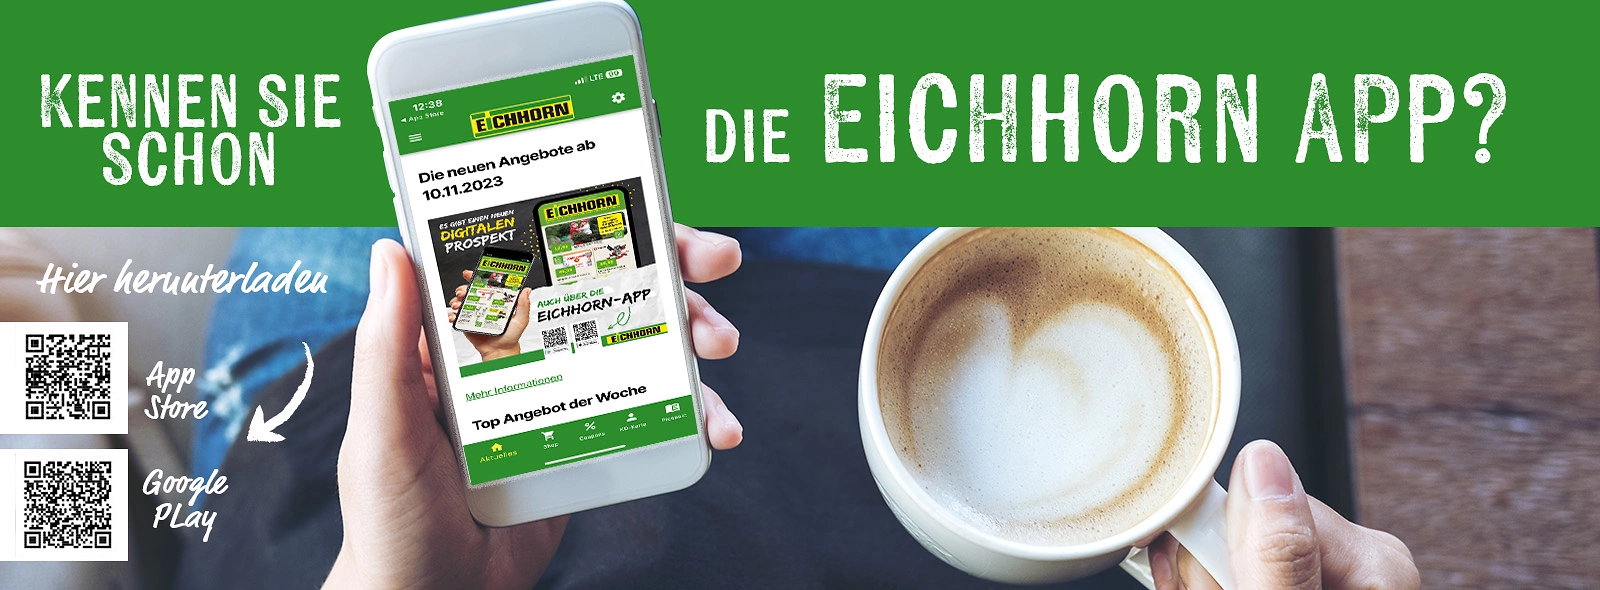 Eichhorn Startseite 1600x590 Desktop App